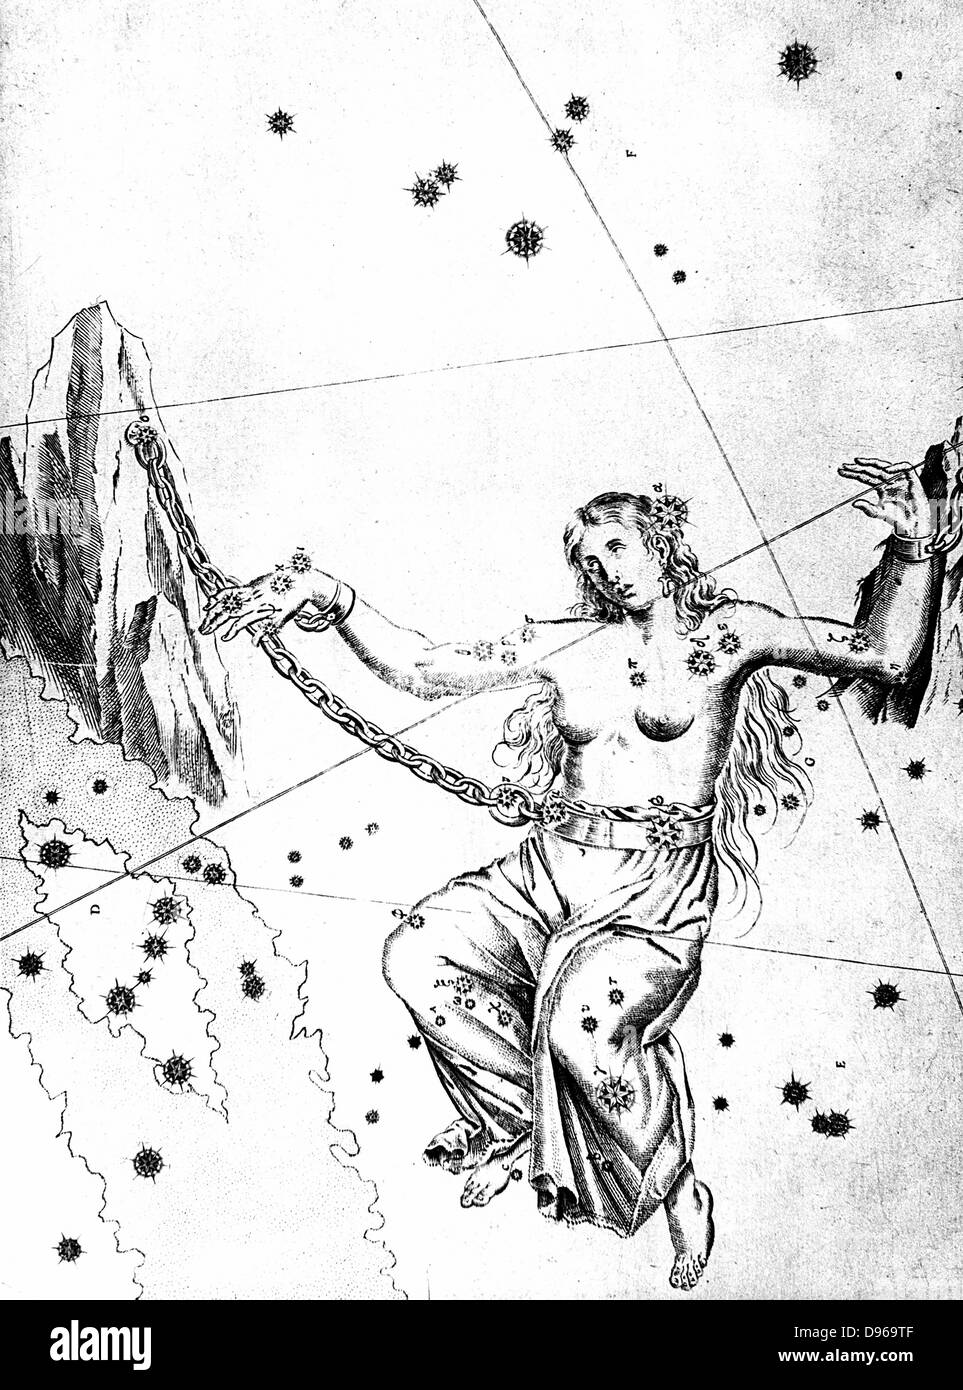 Sternbild Andromeda von Johannes Bayer "uranometria" Ulm 1723. Andromeda angekettet an Felsen Warten auf Rettung von Perseus. Kupferstich Stockfoto